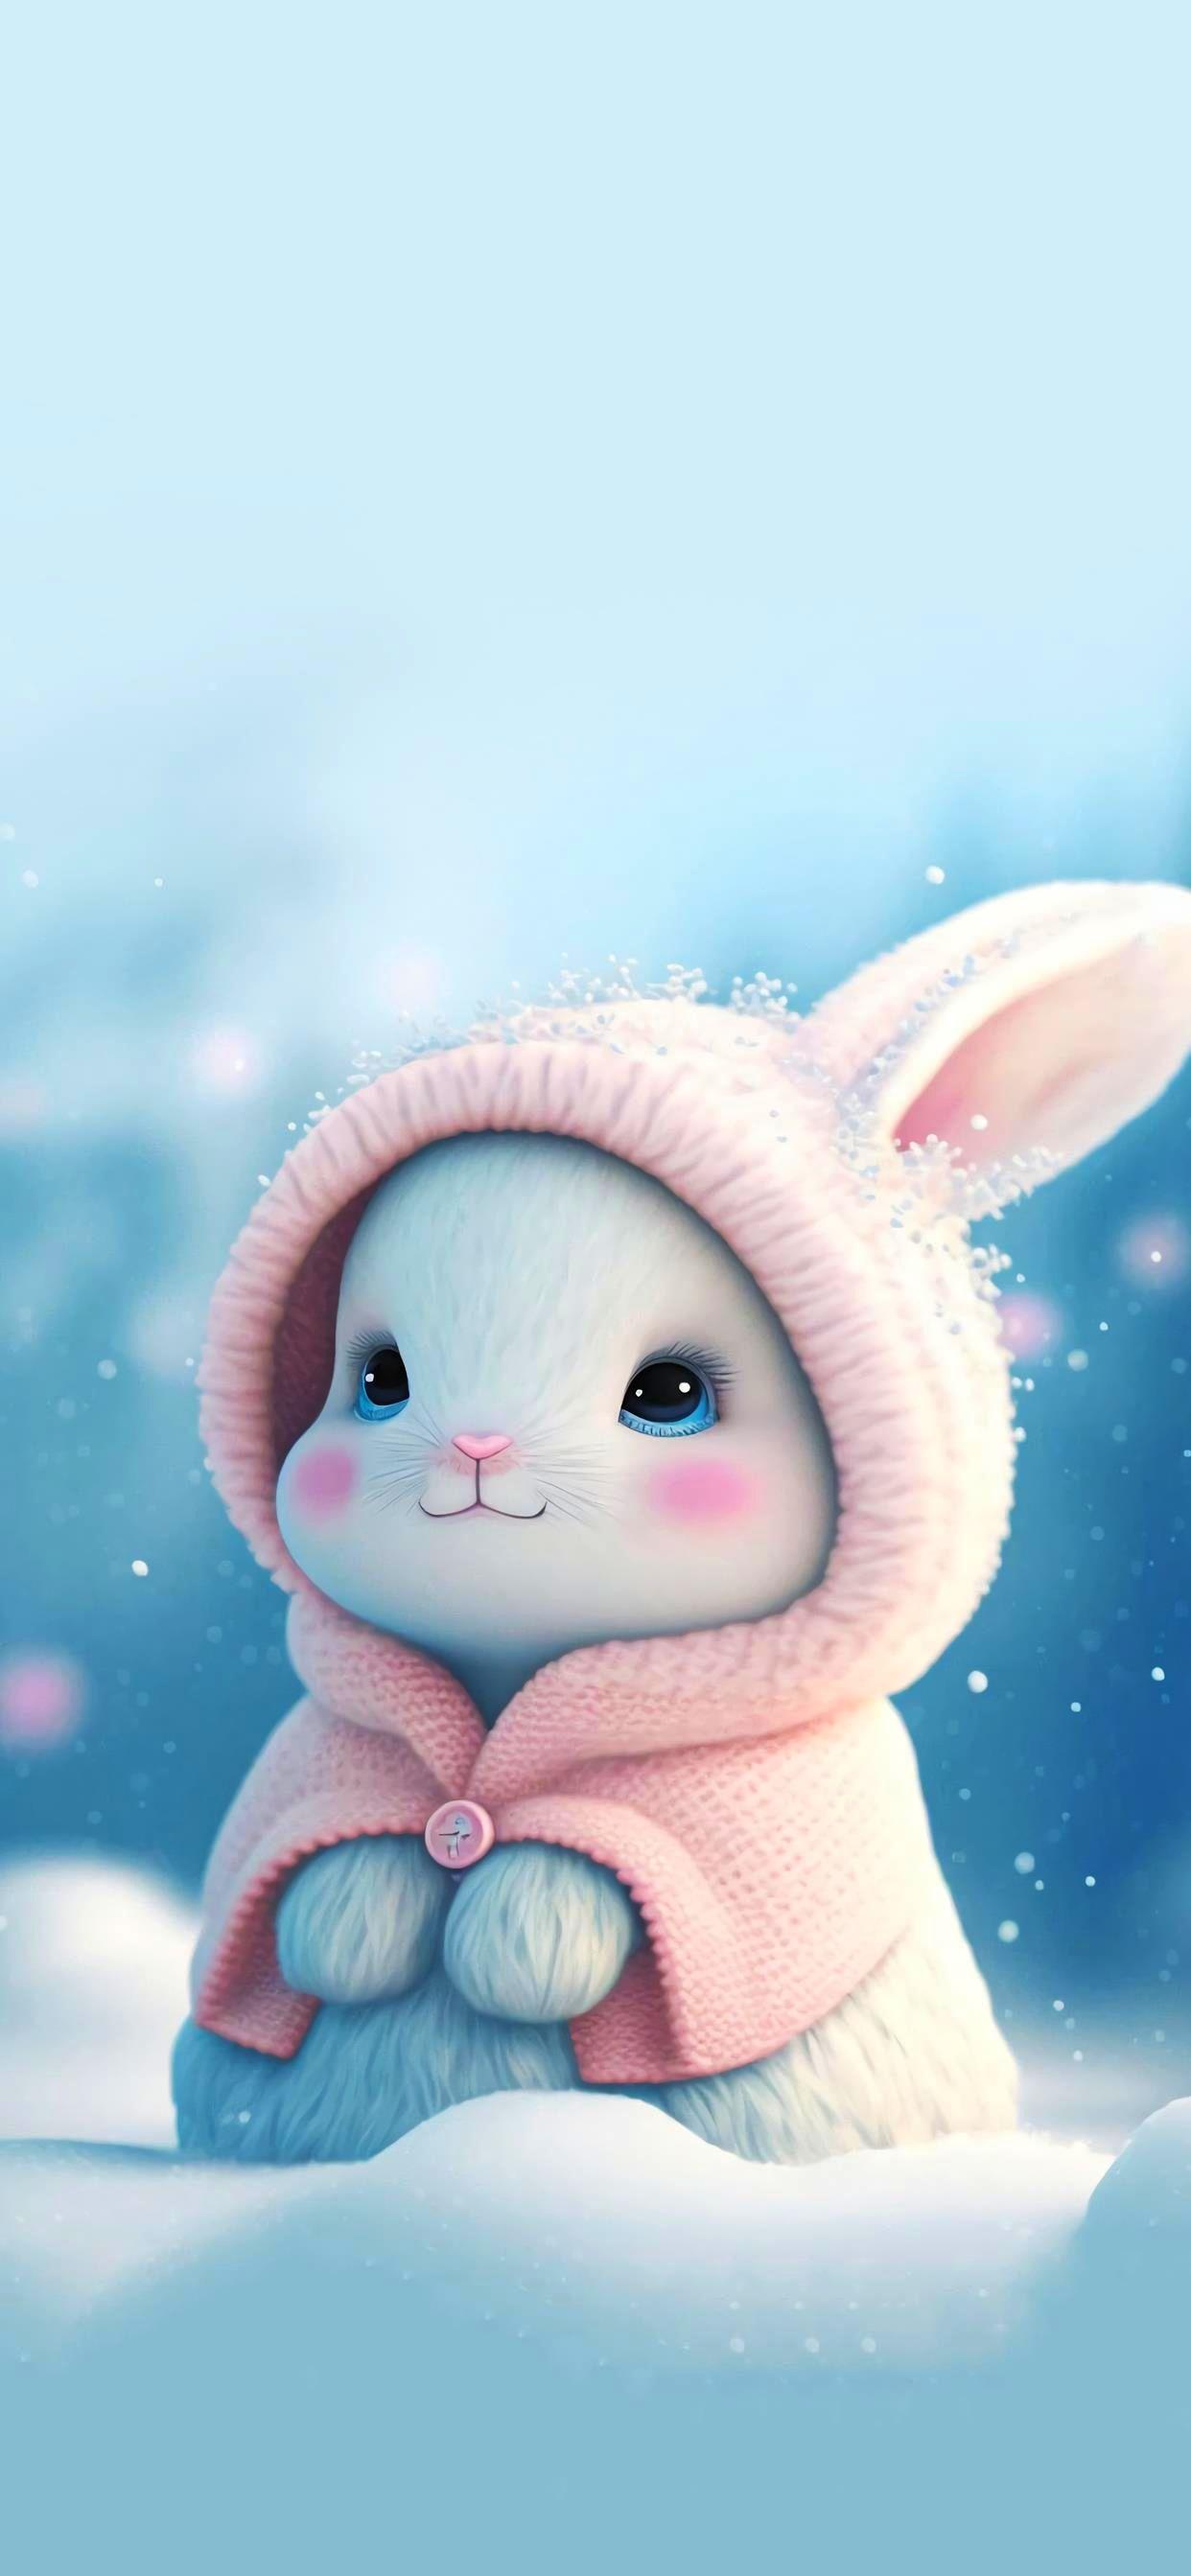 Cute Art Wallpaper Rabbit HD 4k Fluffy